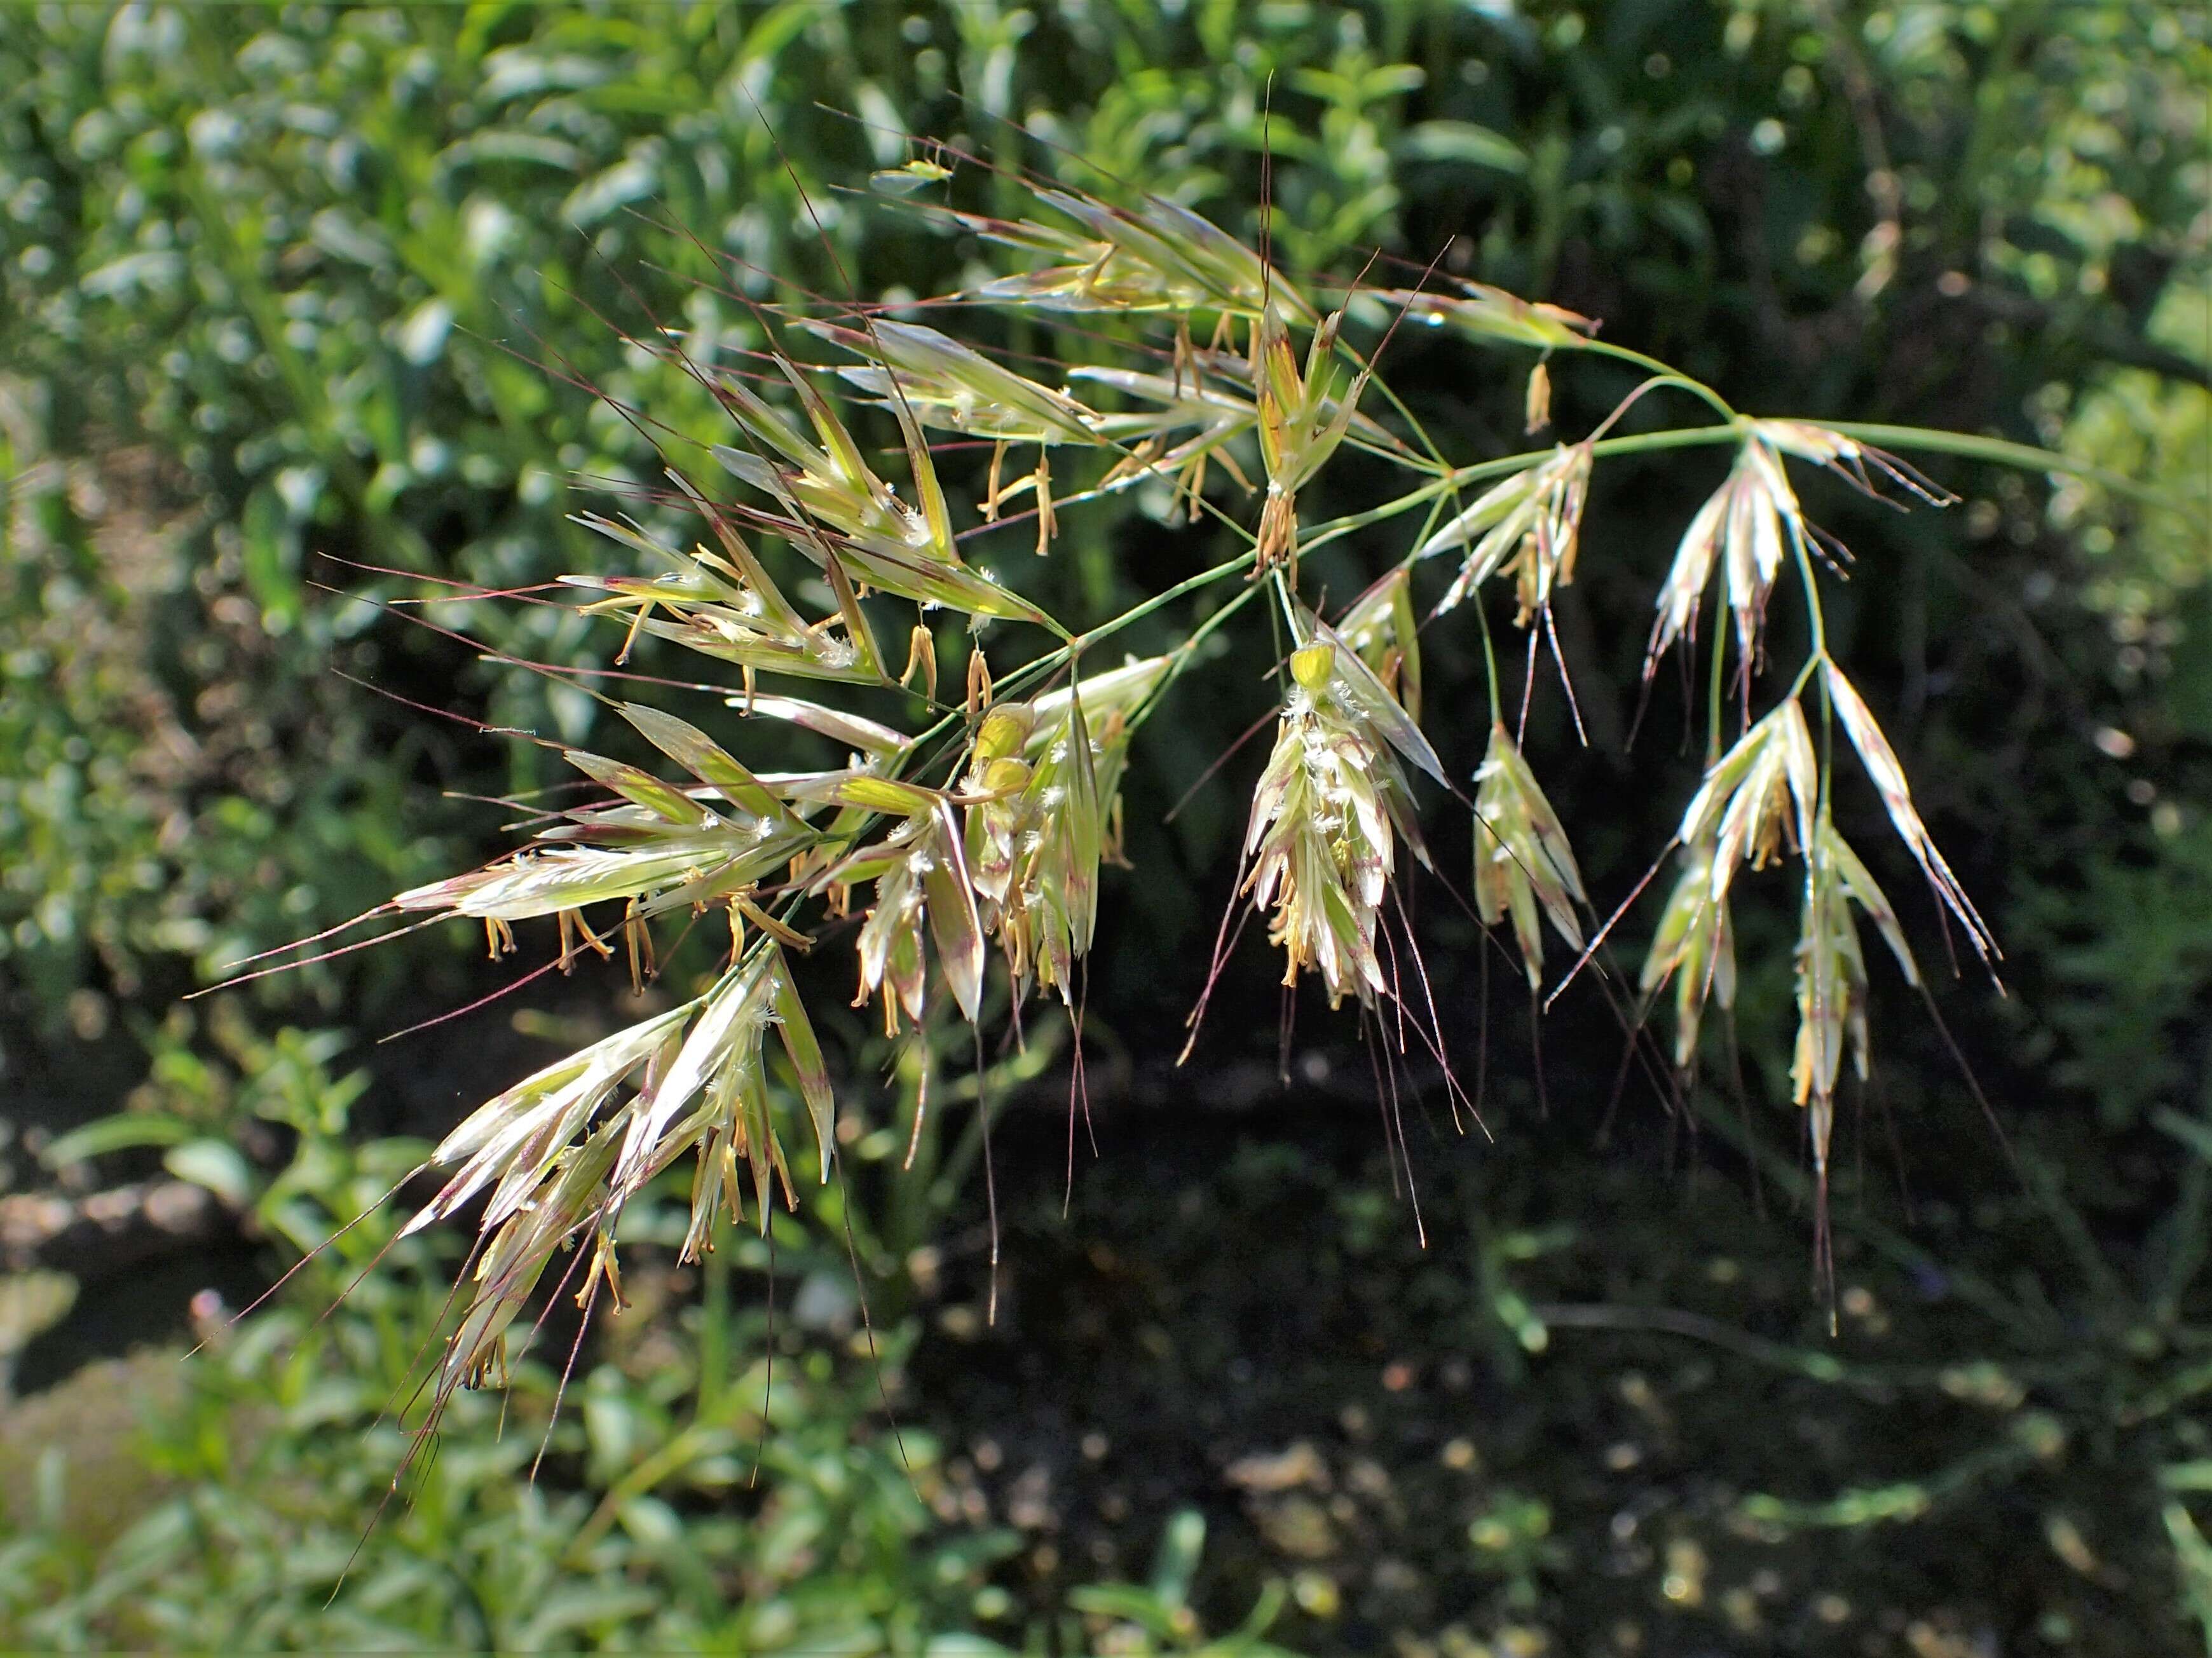 Image of oatgrass